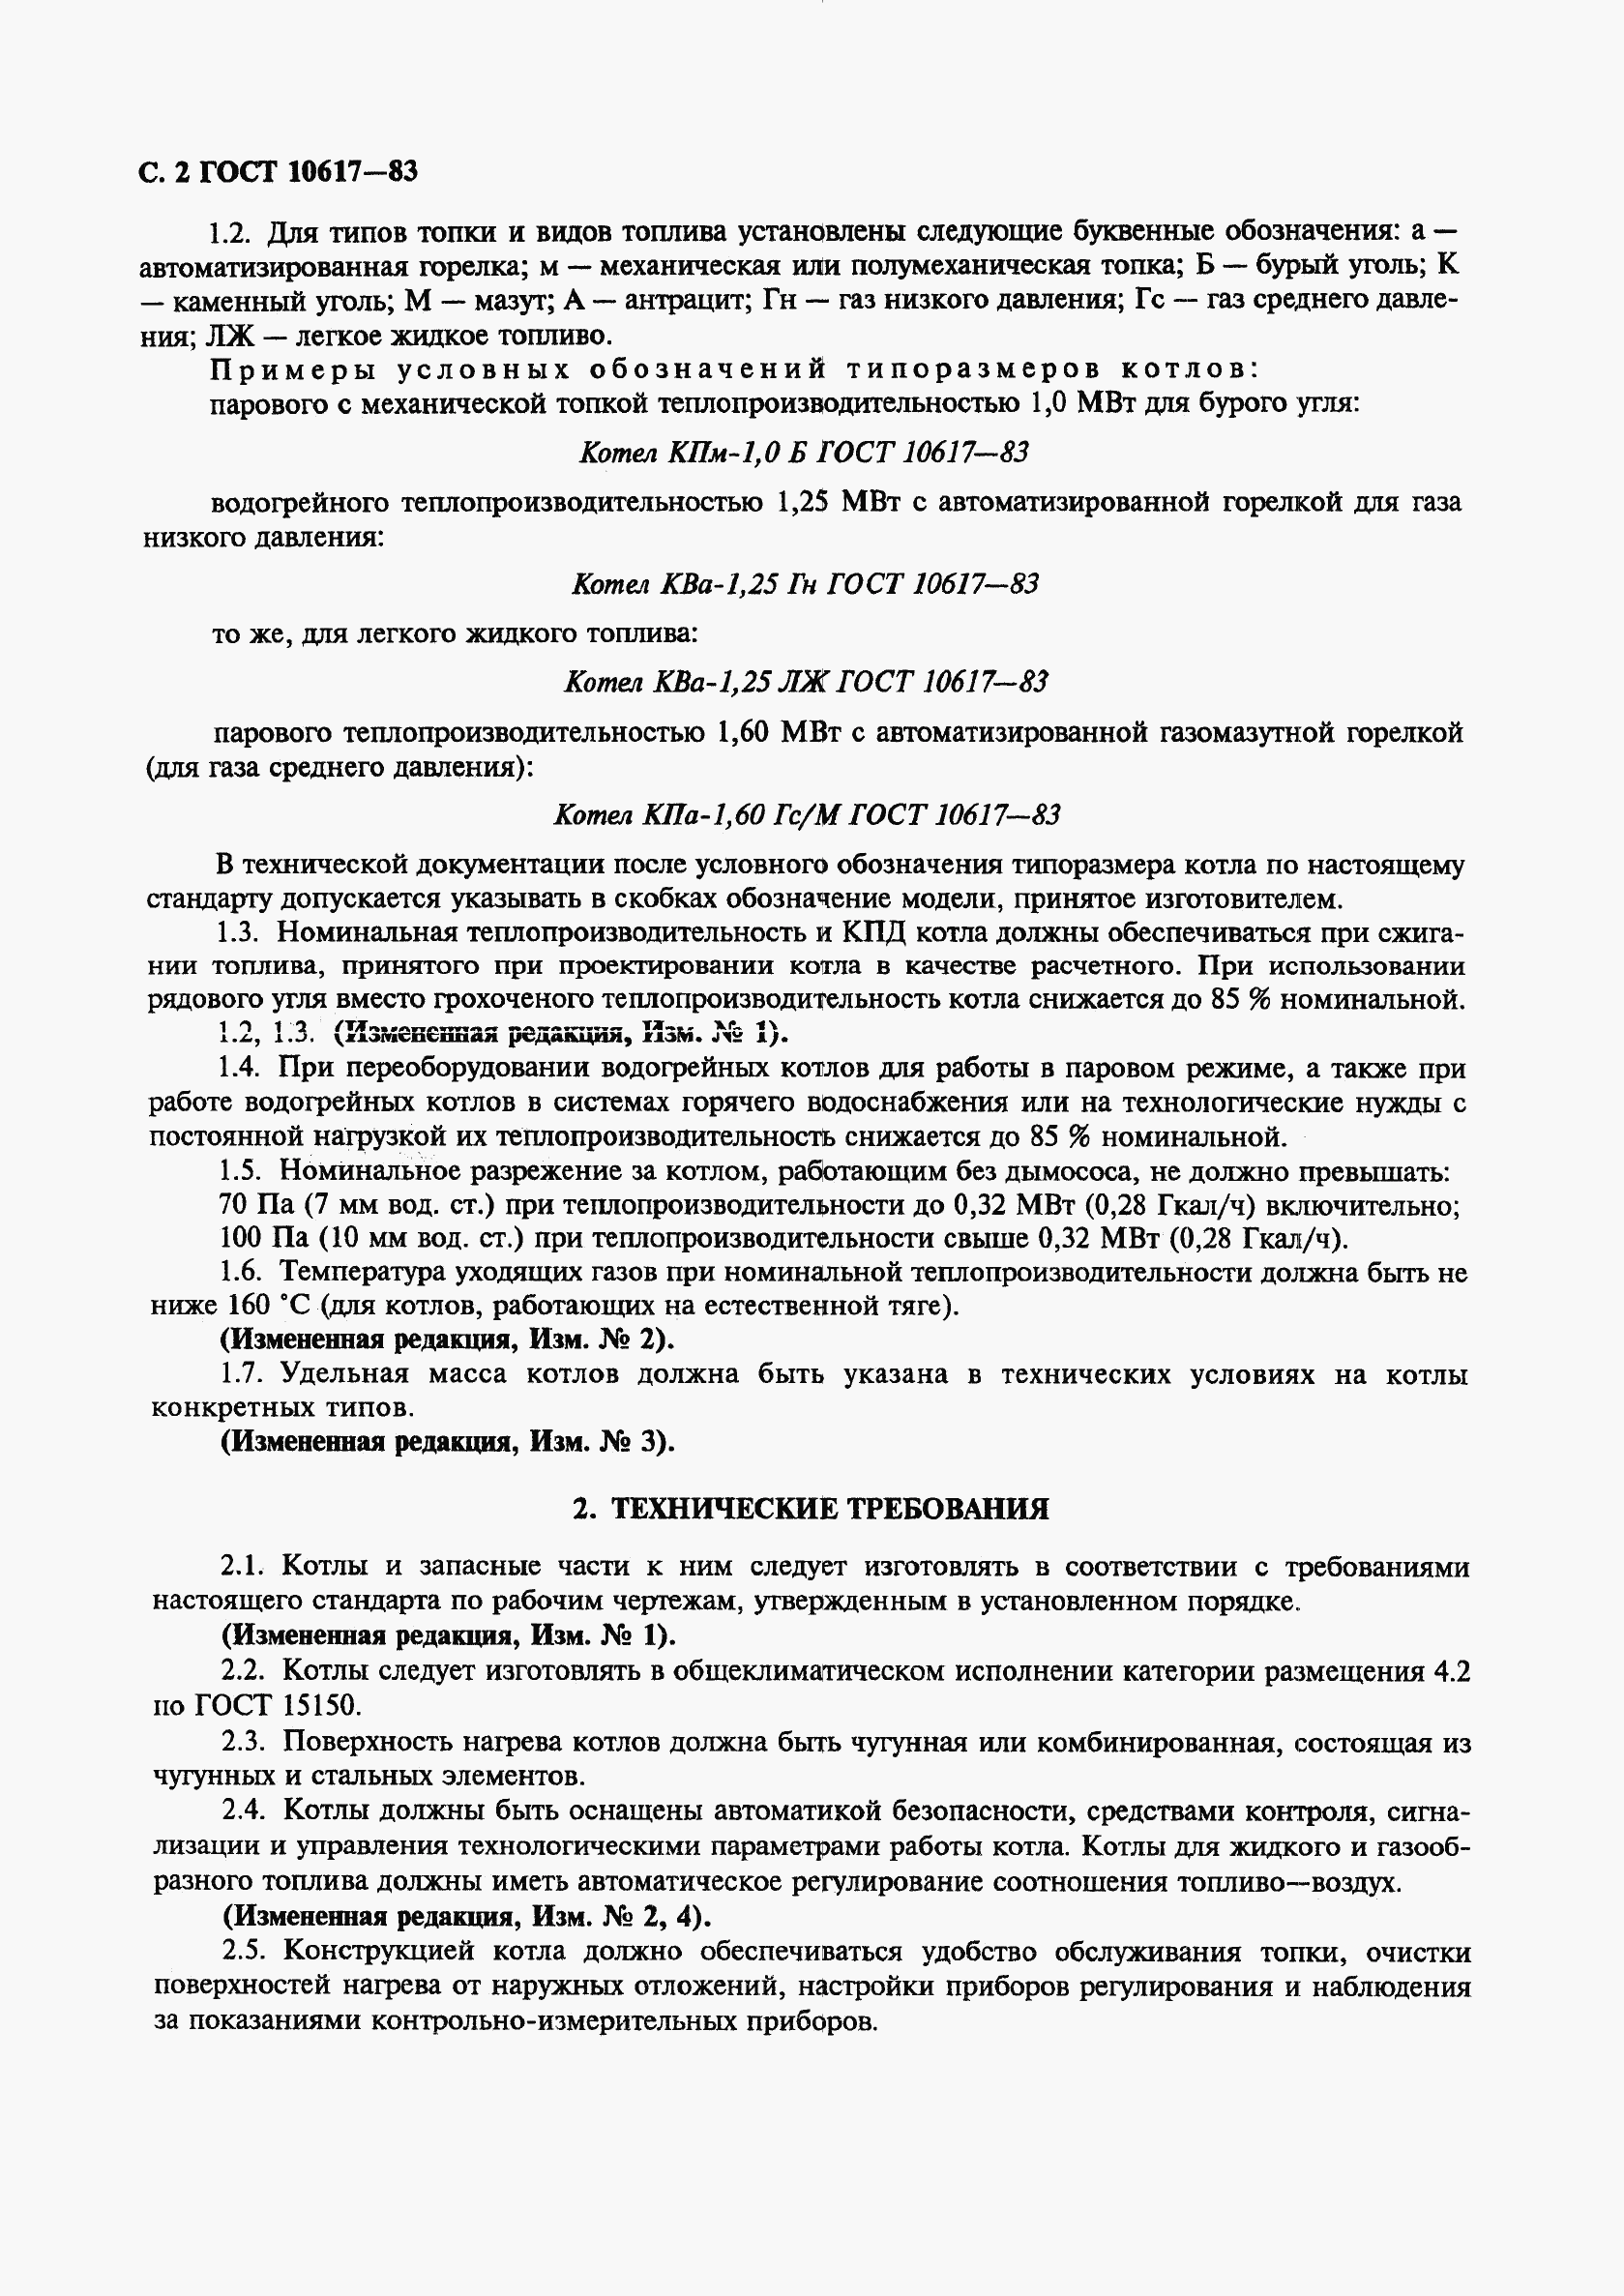 ГОСТ 10617-83, страница 4